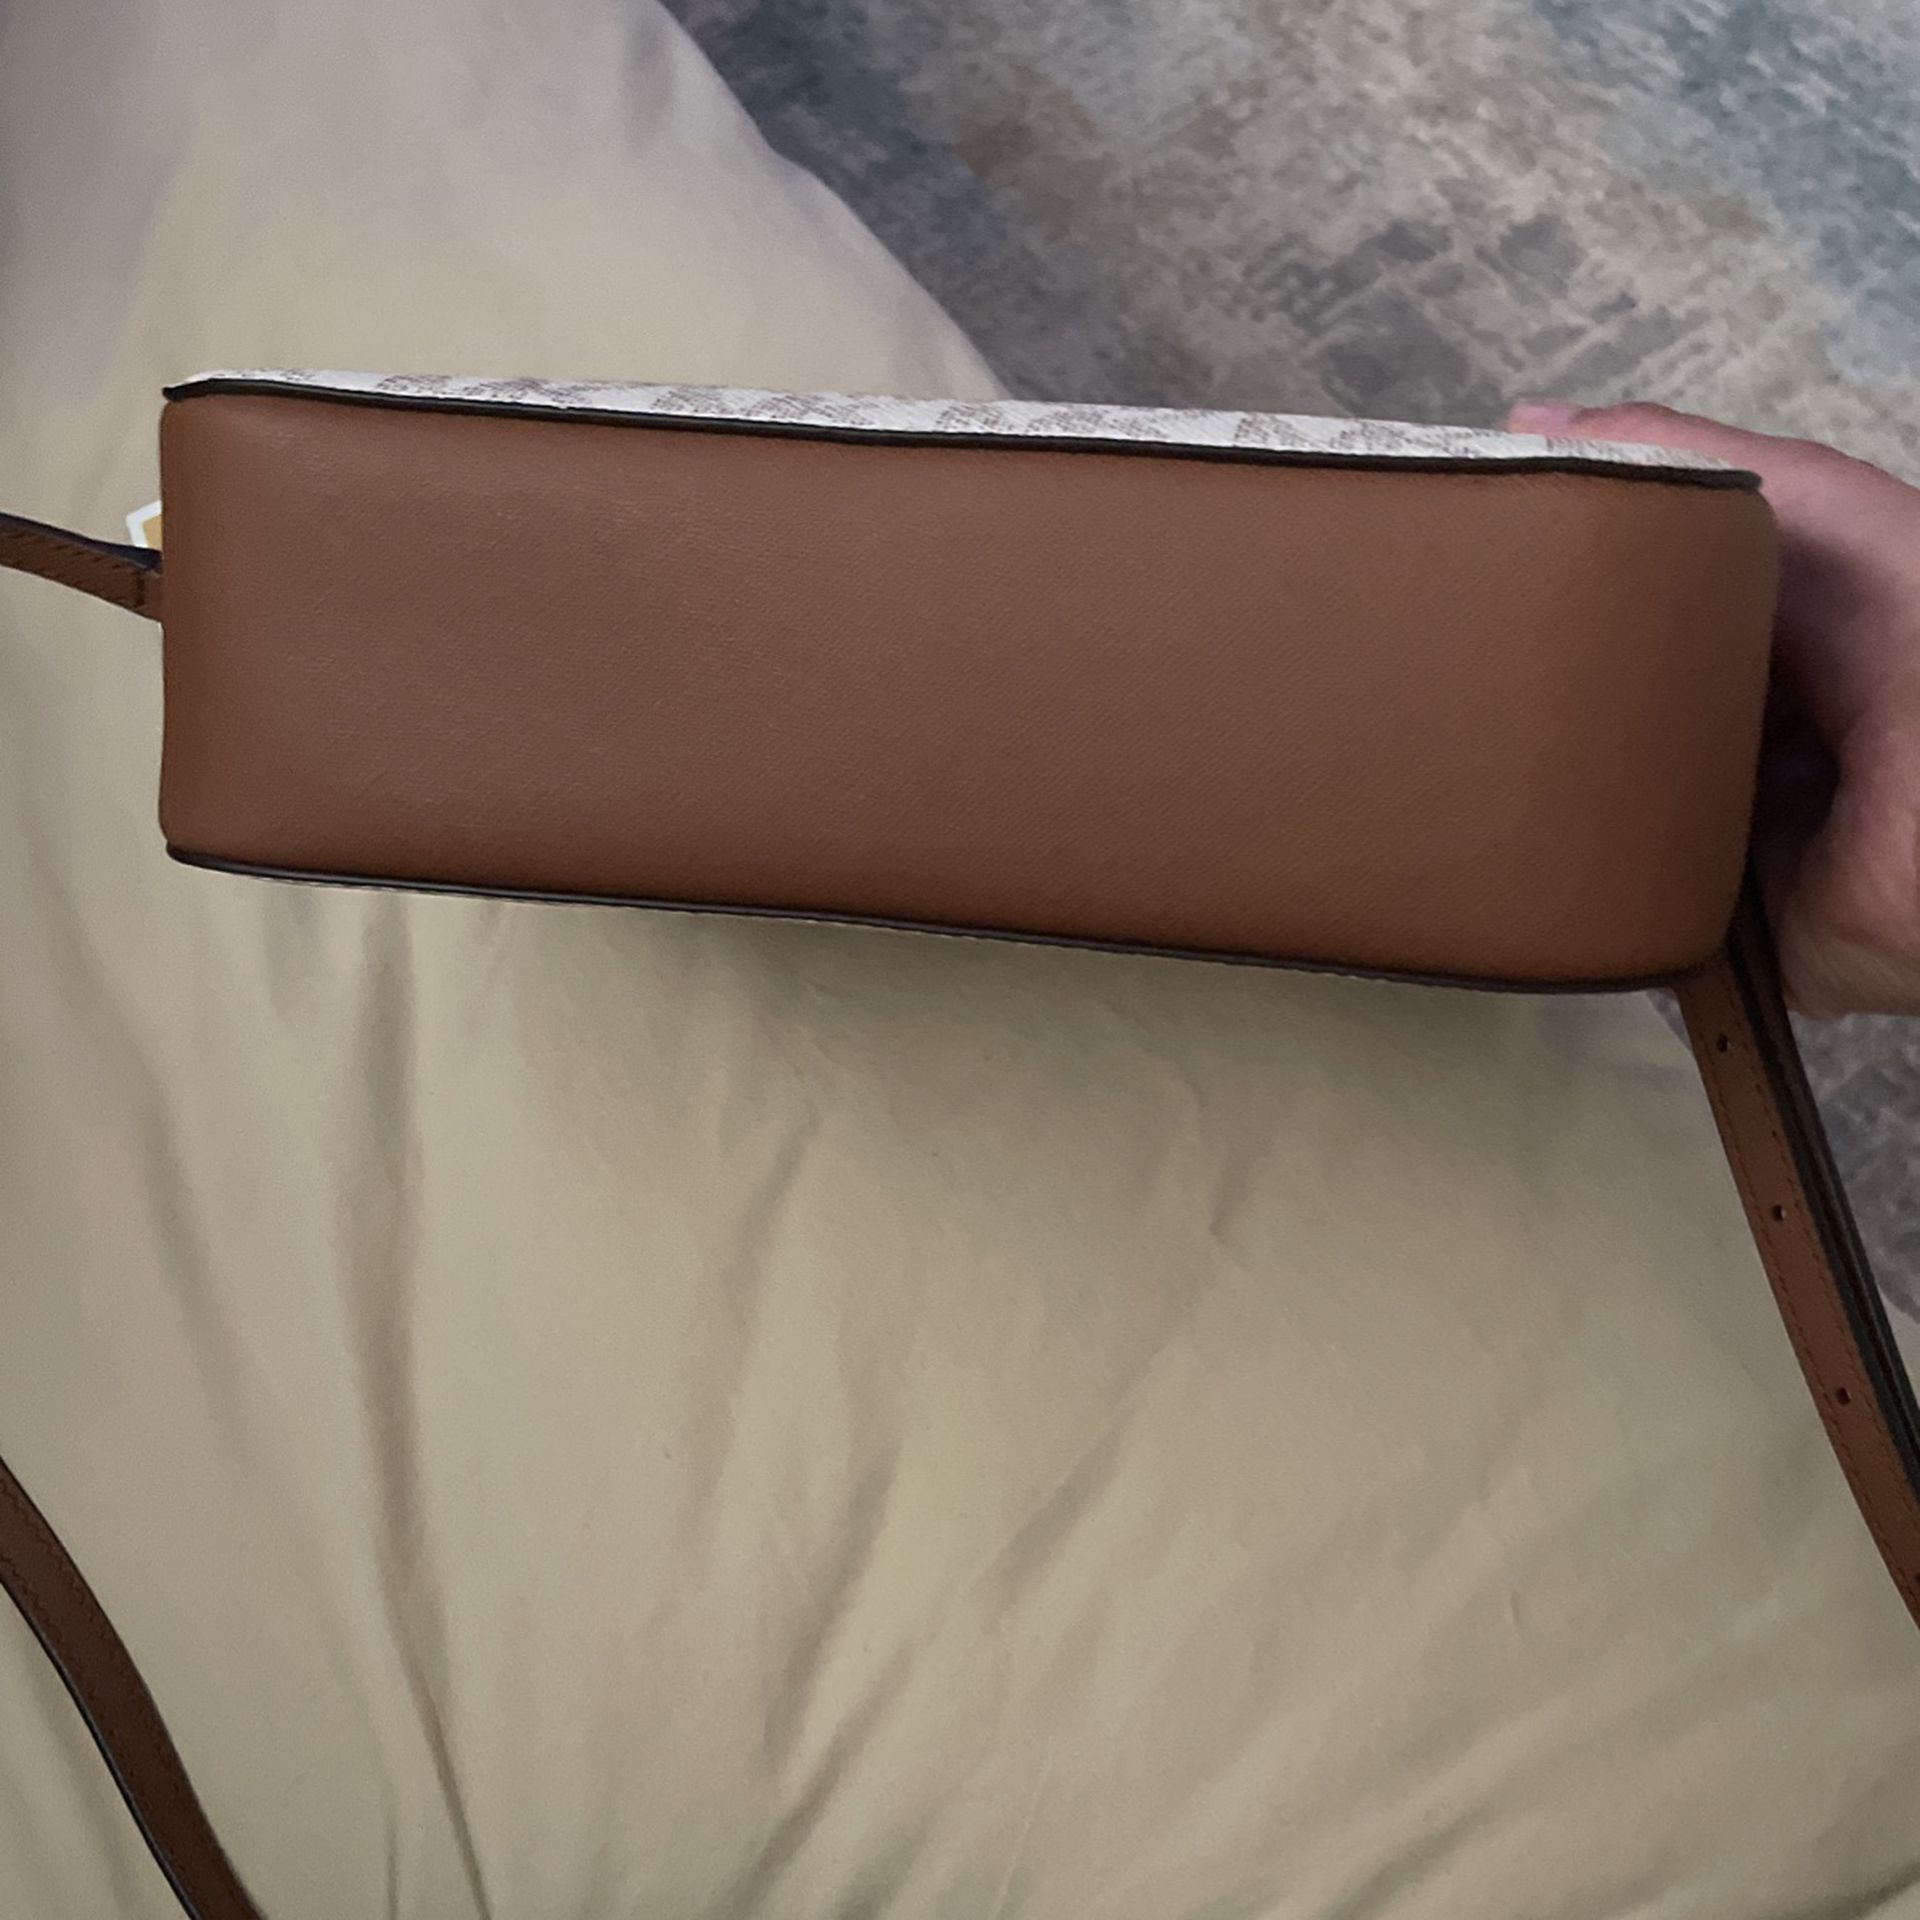 Michael Kors Sequin Handbag for Sale in City Of Industry, CA - OfferUp